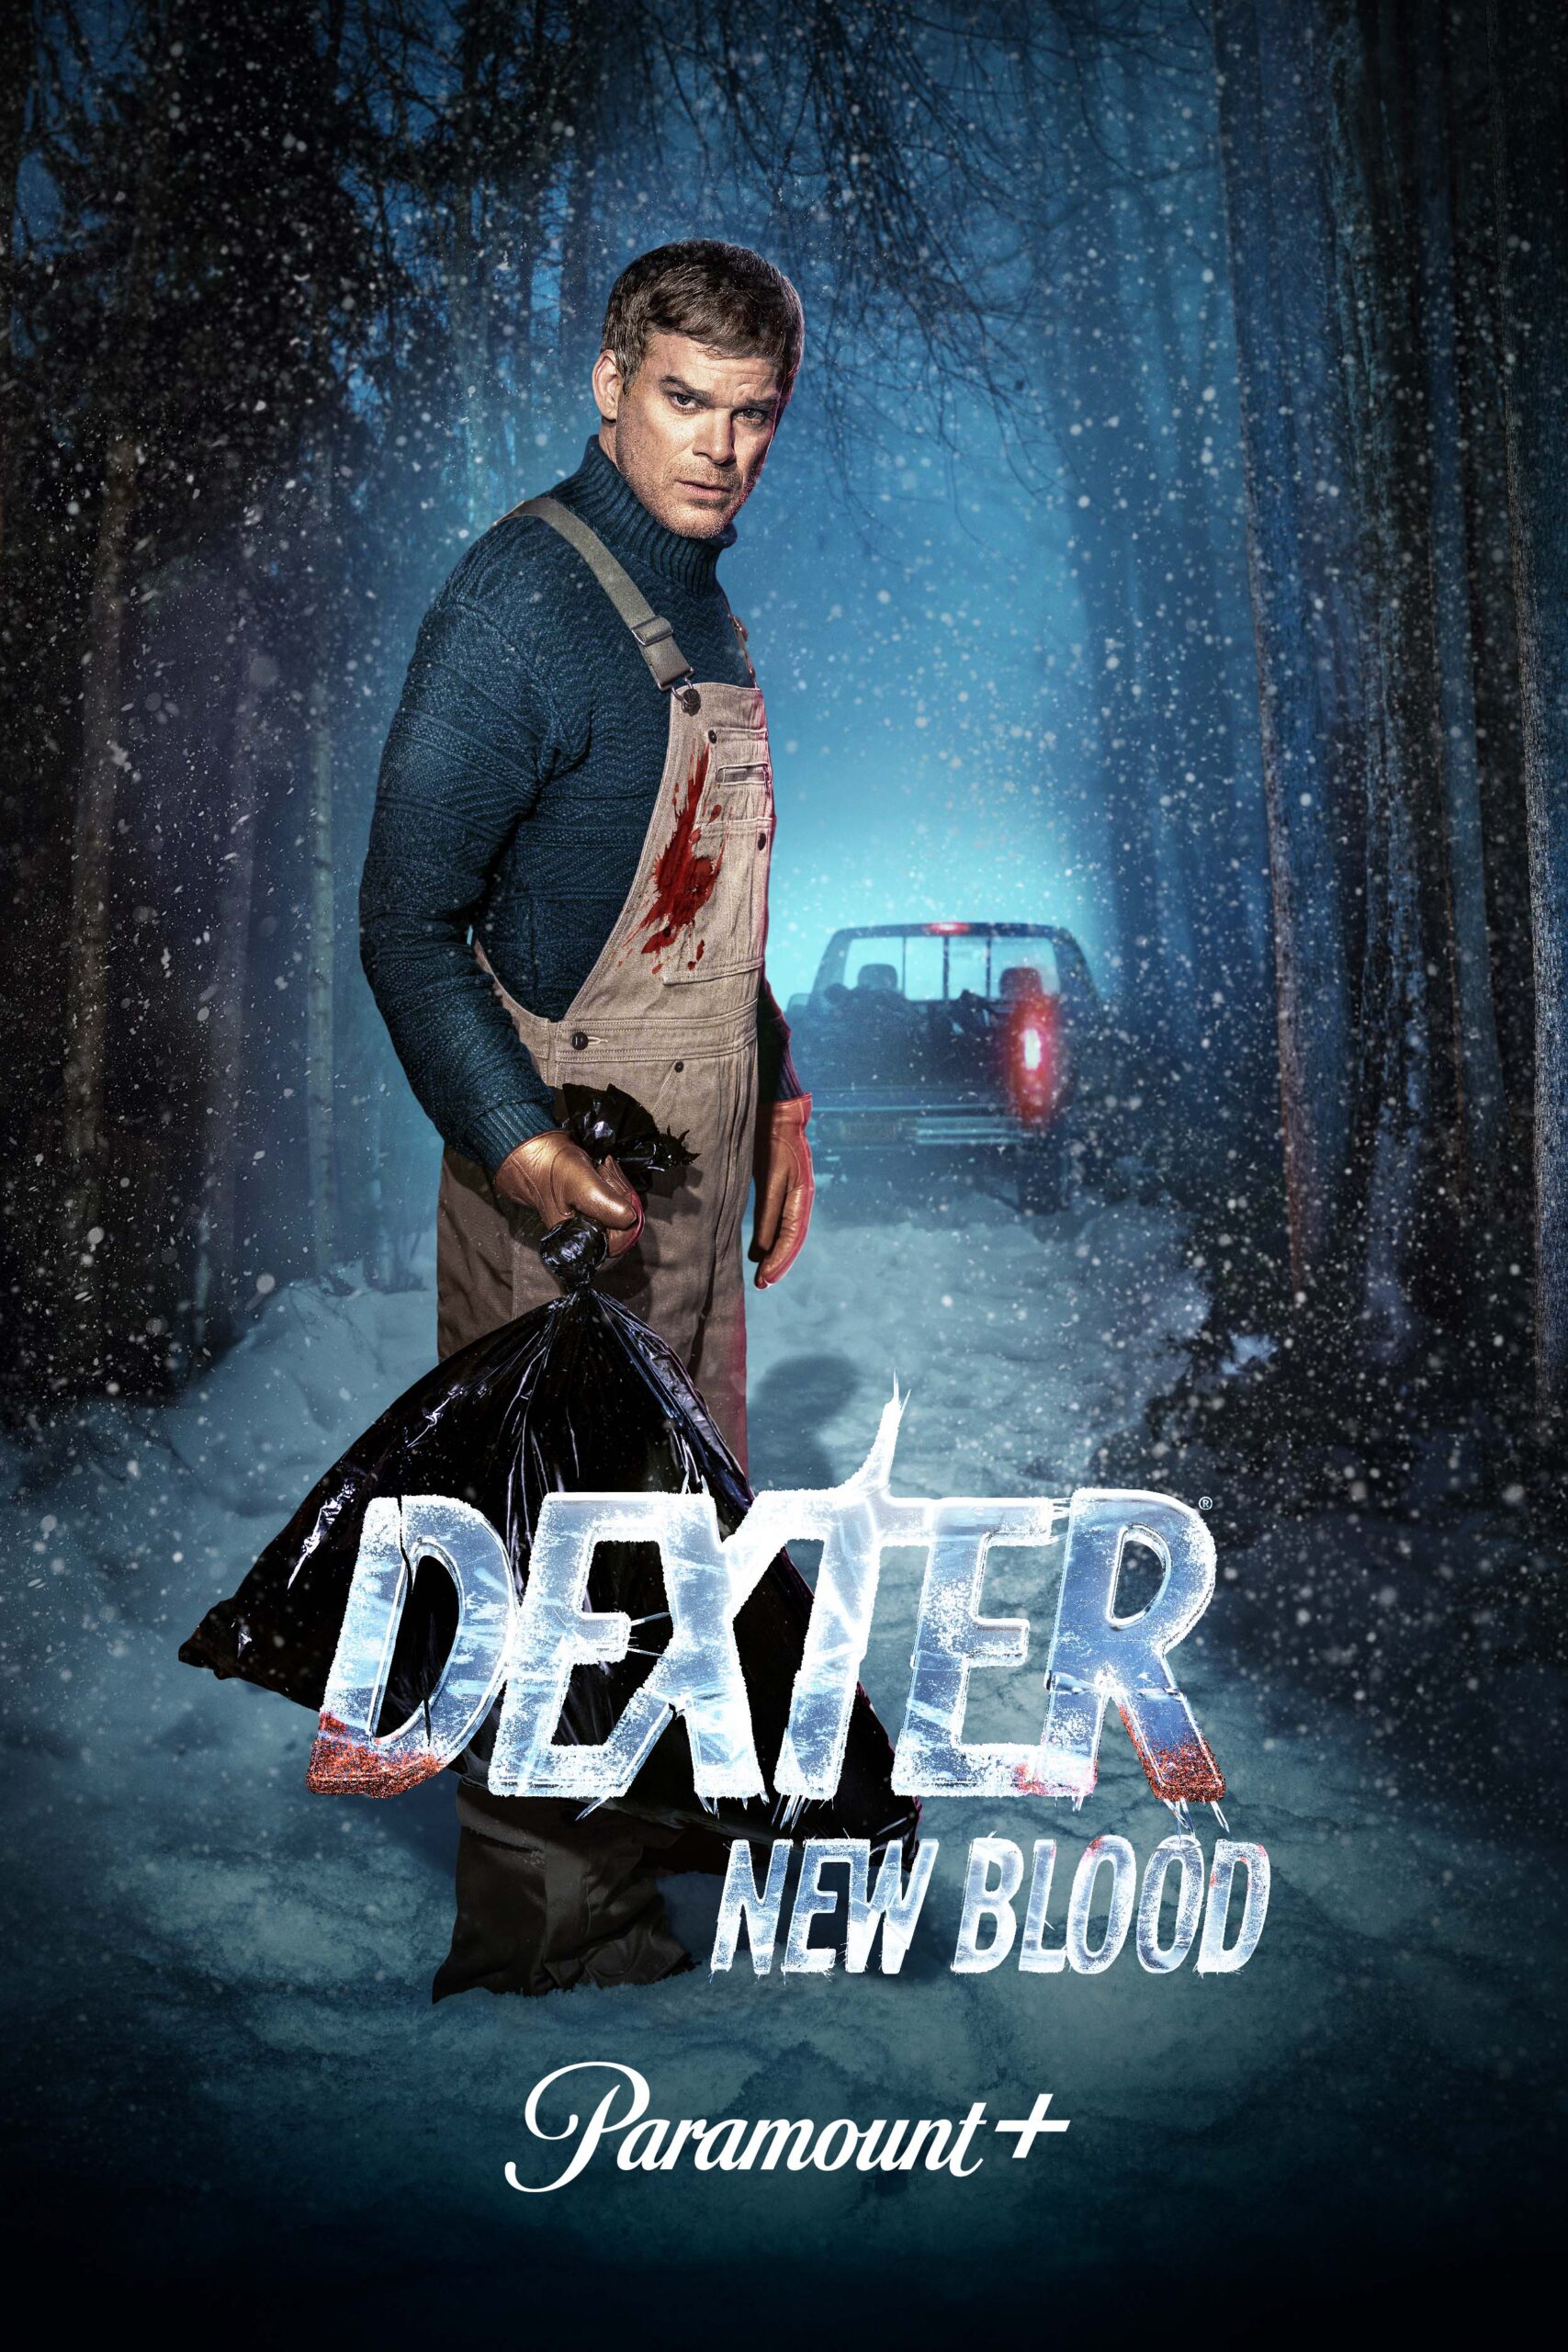 En noviembre, Paramount+ se recarga con los contenidos más esperados del año, empezando por Dexter, New Blood